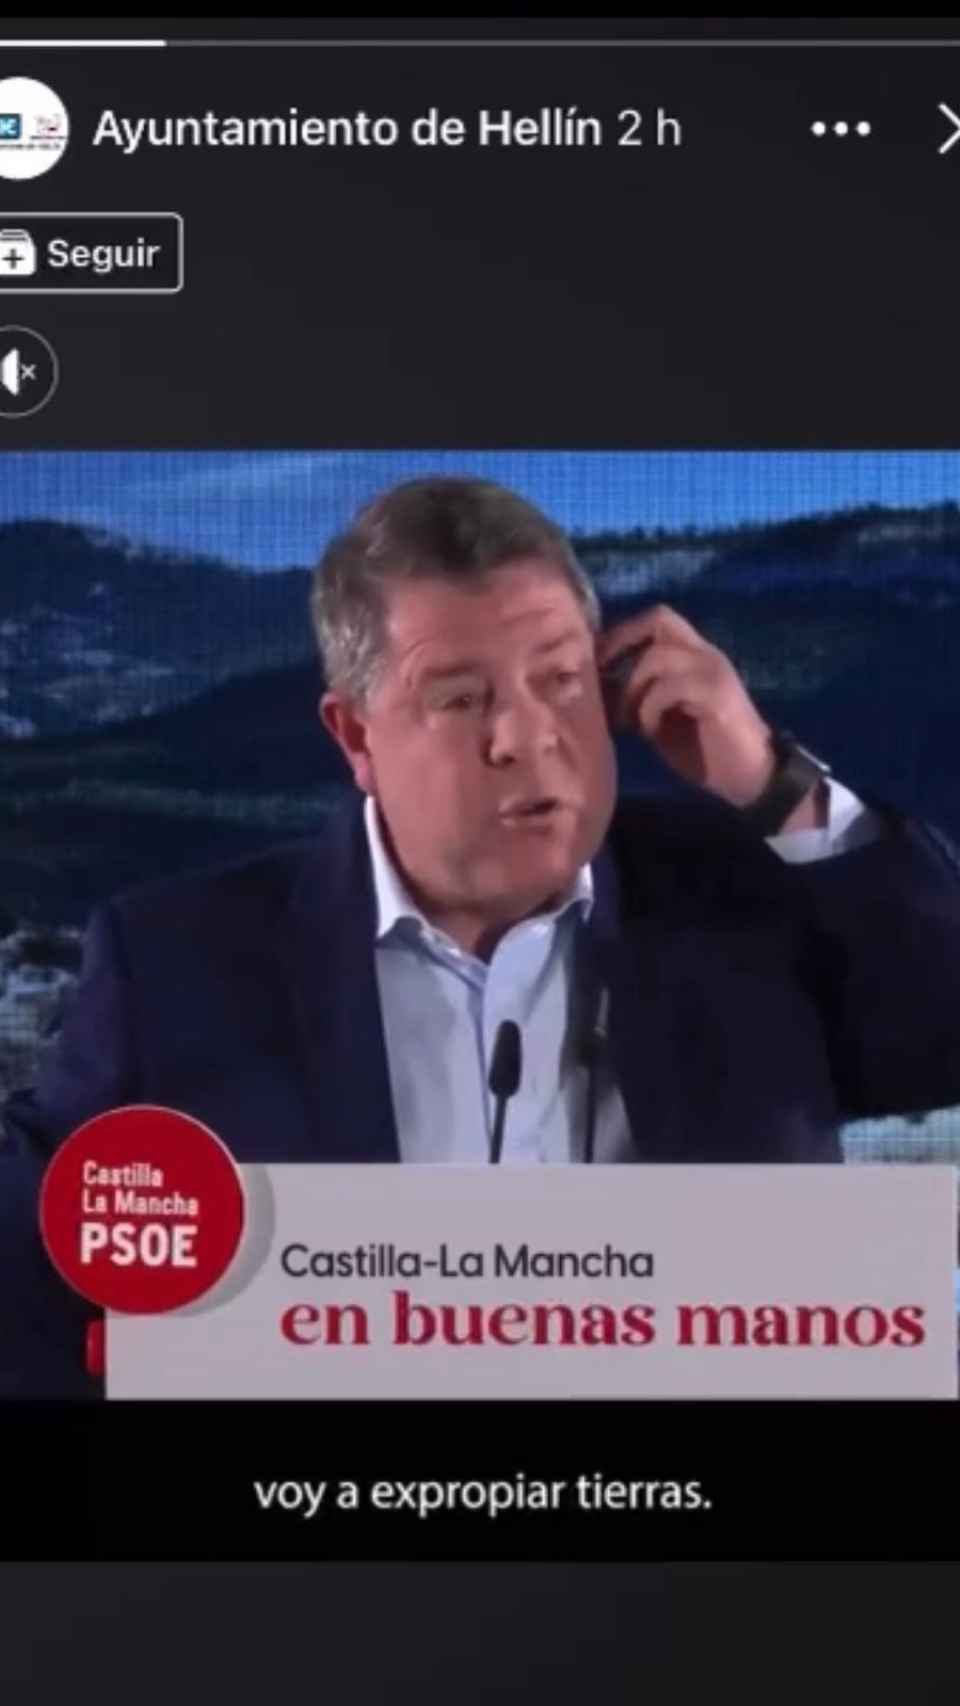 Imagen difundida por el Partido Popular de Castilla-La Mancha